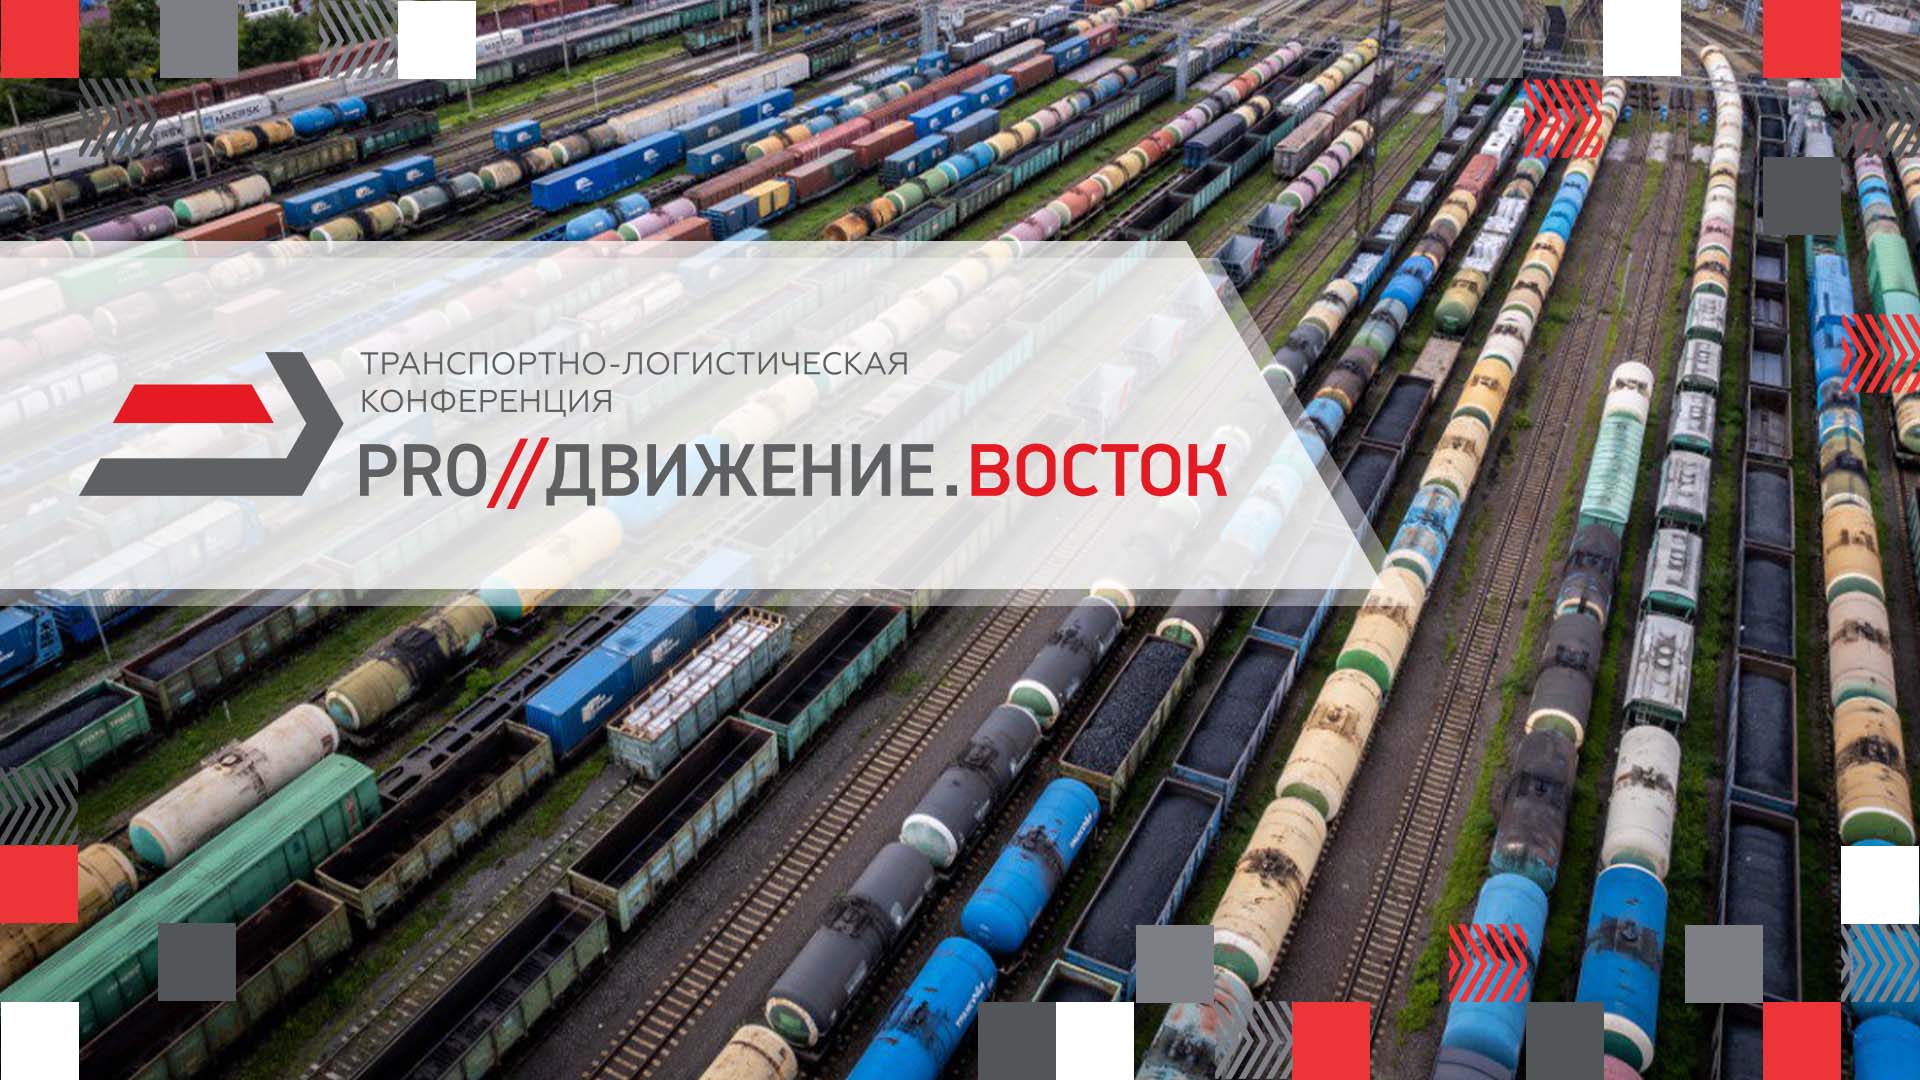 Конференция «PRO//Движение.Восток» в Хабаровске состоится уже через неделю!